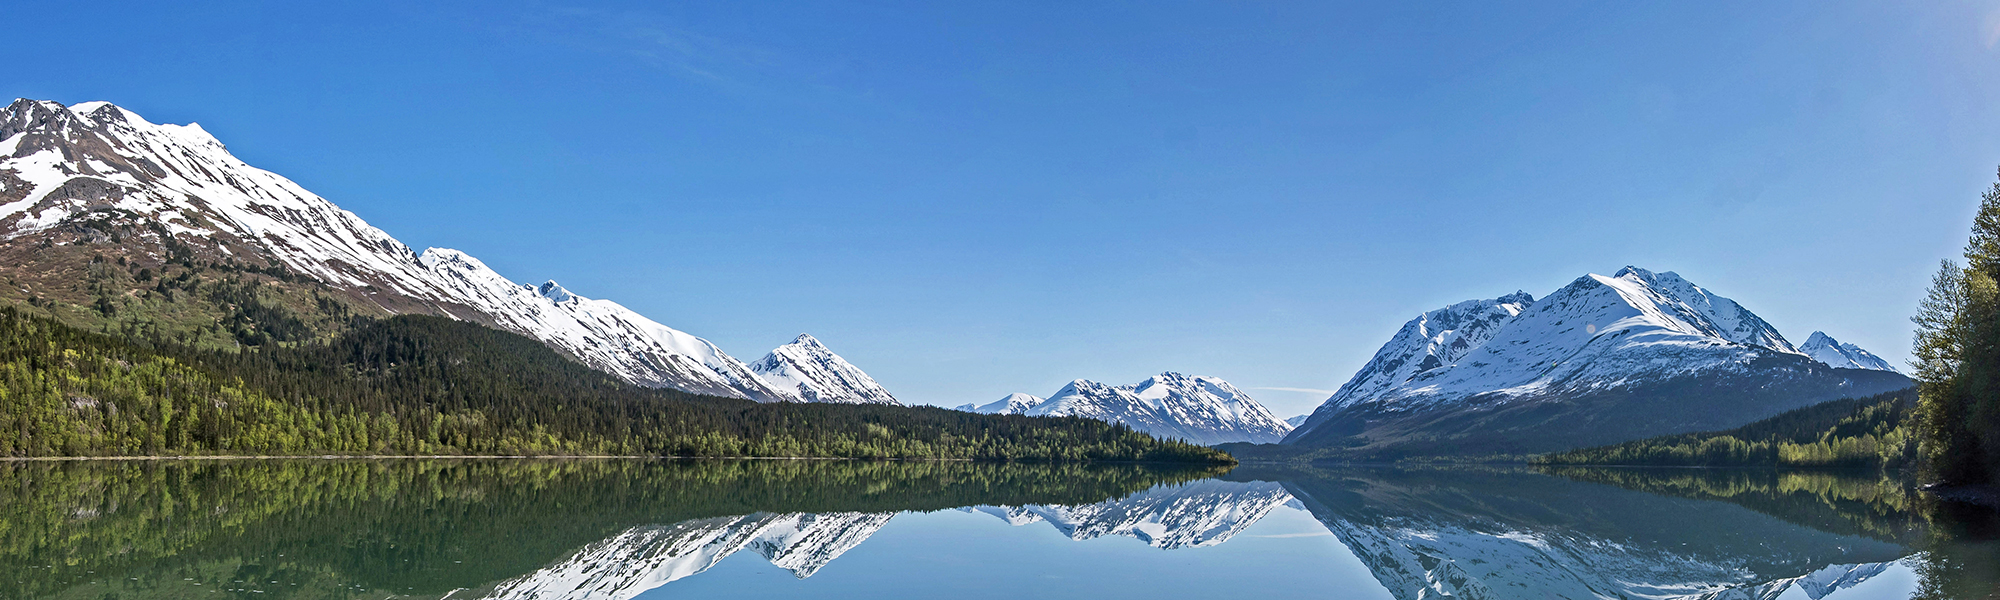 Voyage en Alaska © Rocky Grimes - Adobe-Stock